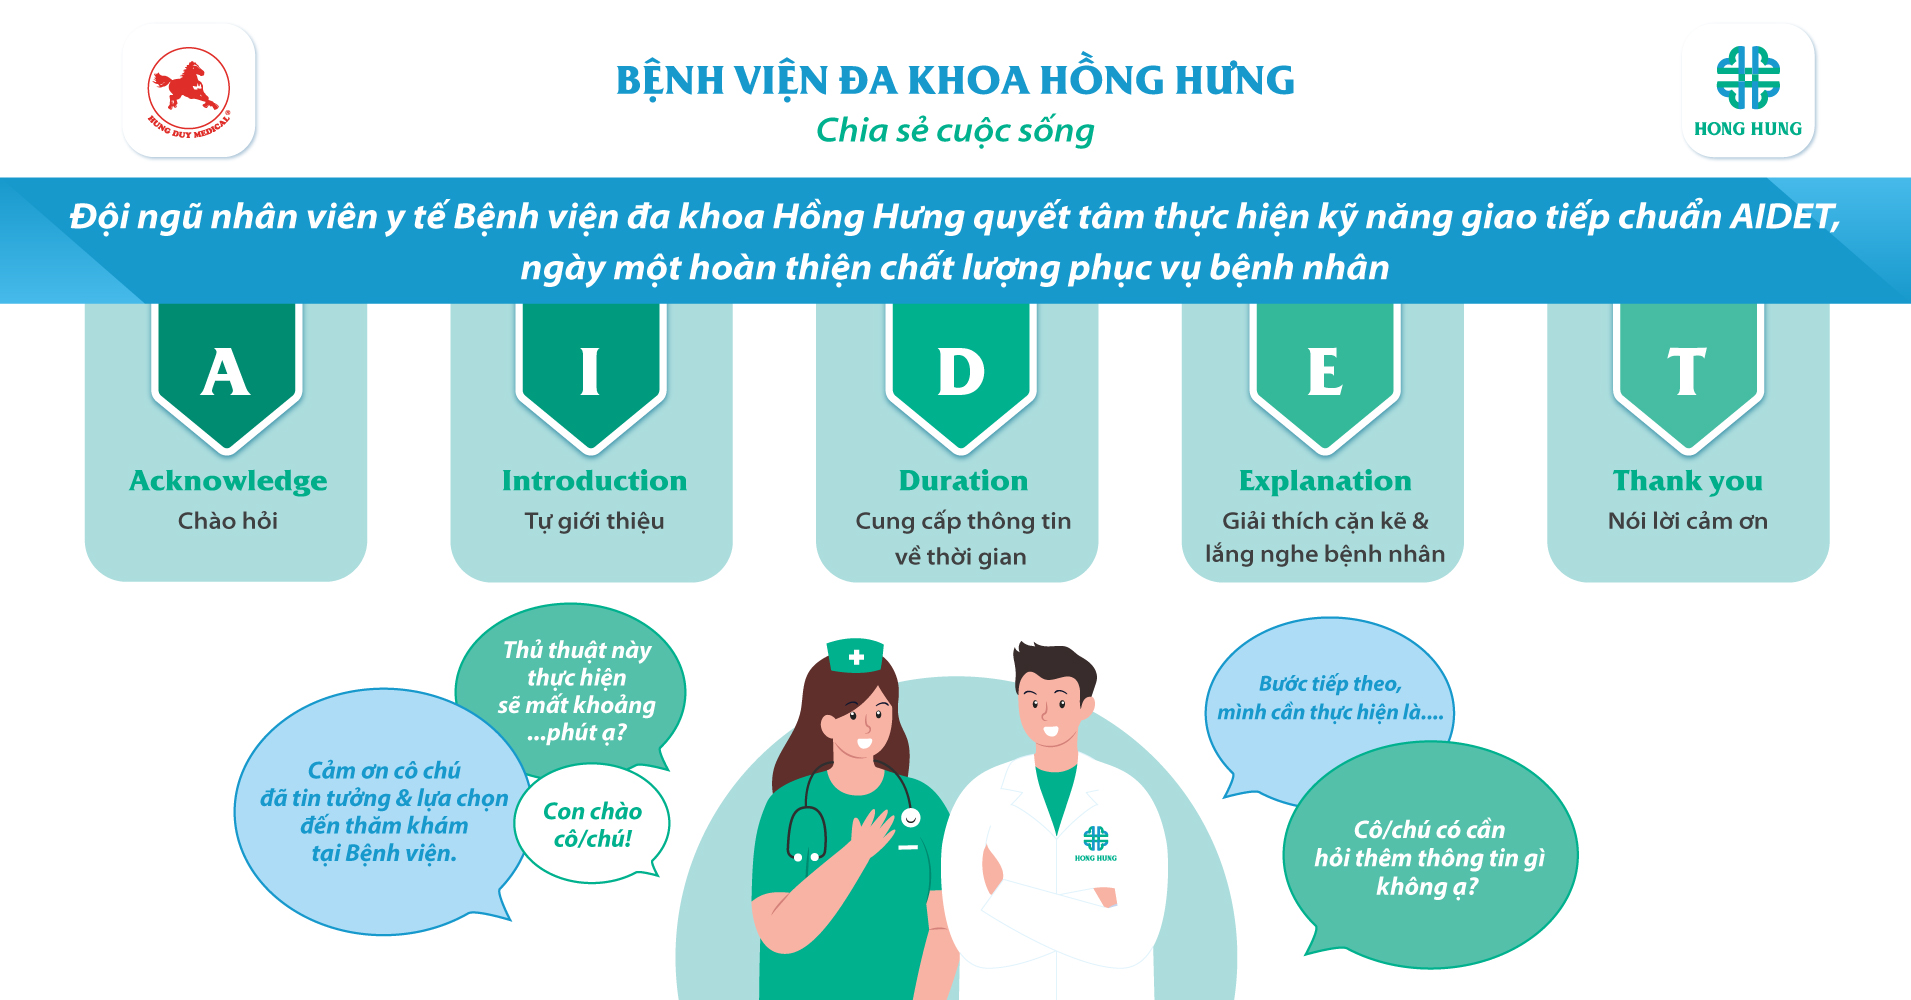 Nhân viên BVĐK Hồng Hưng tích cực thực hiện kỹ năng giao tiếp chuẩn AIDET   Hong Hung Hospital